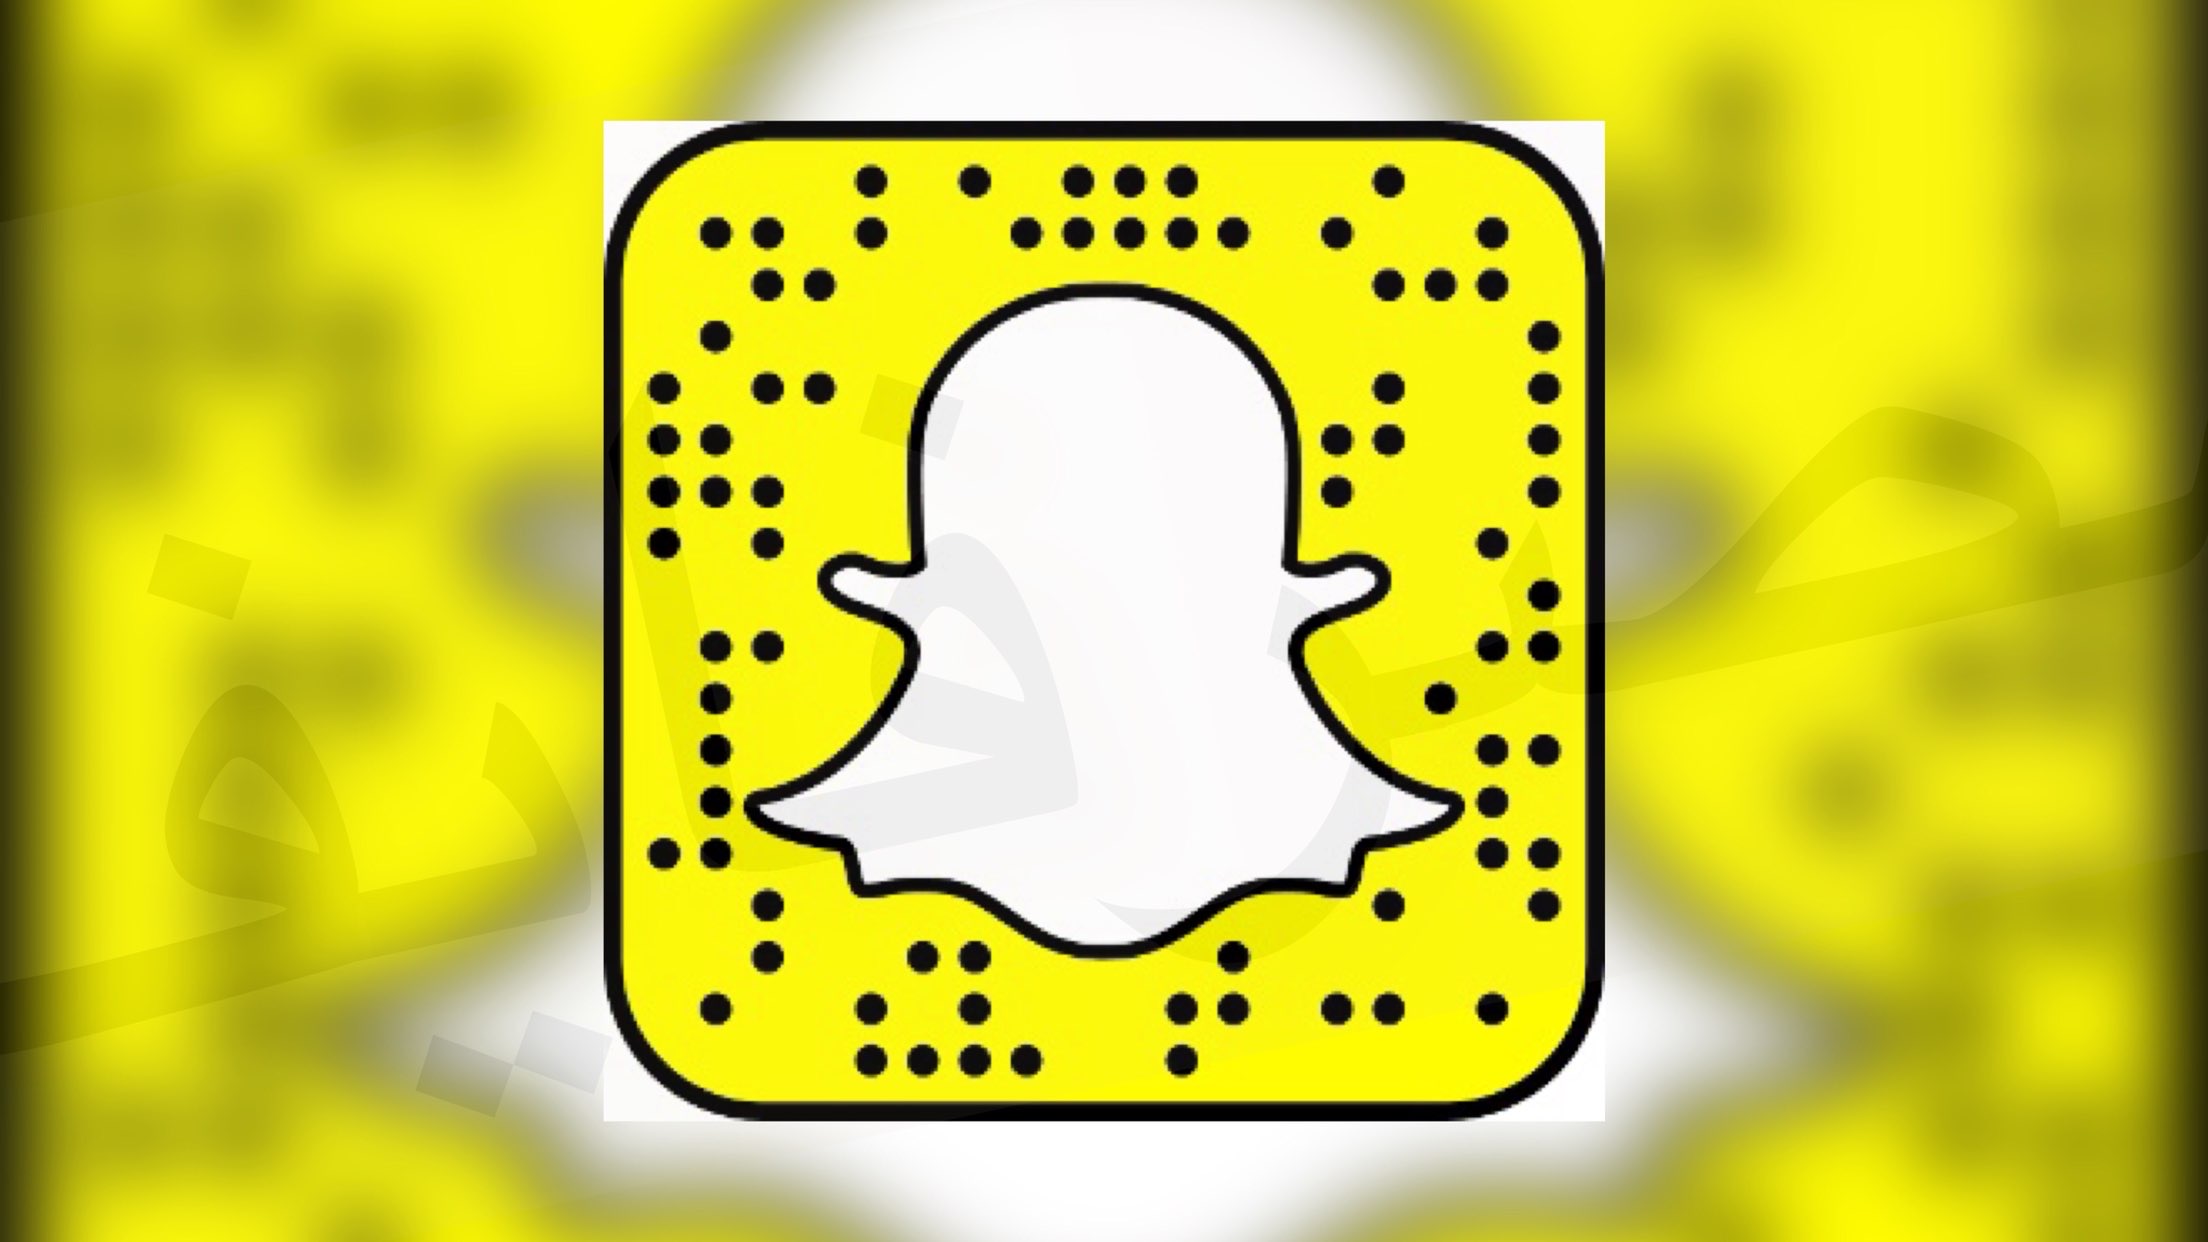 سناب شات يطلق أداة جديدة لمتابعة متطلبات السوق تسمي Snapchat Trends